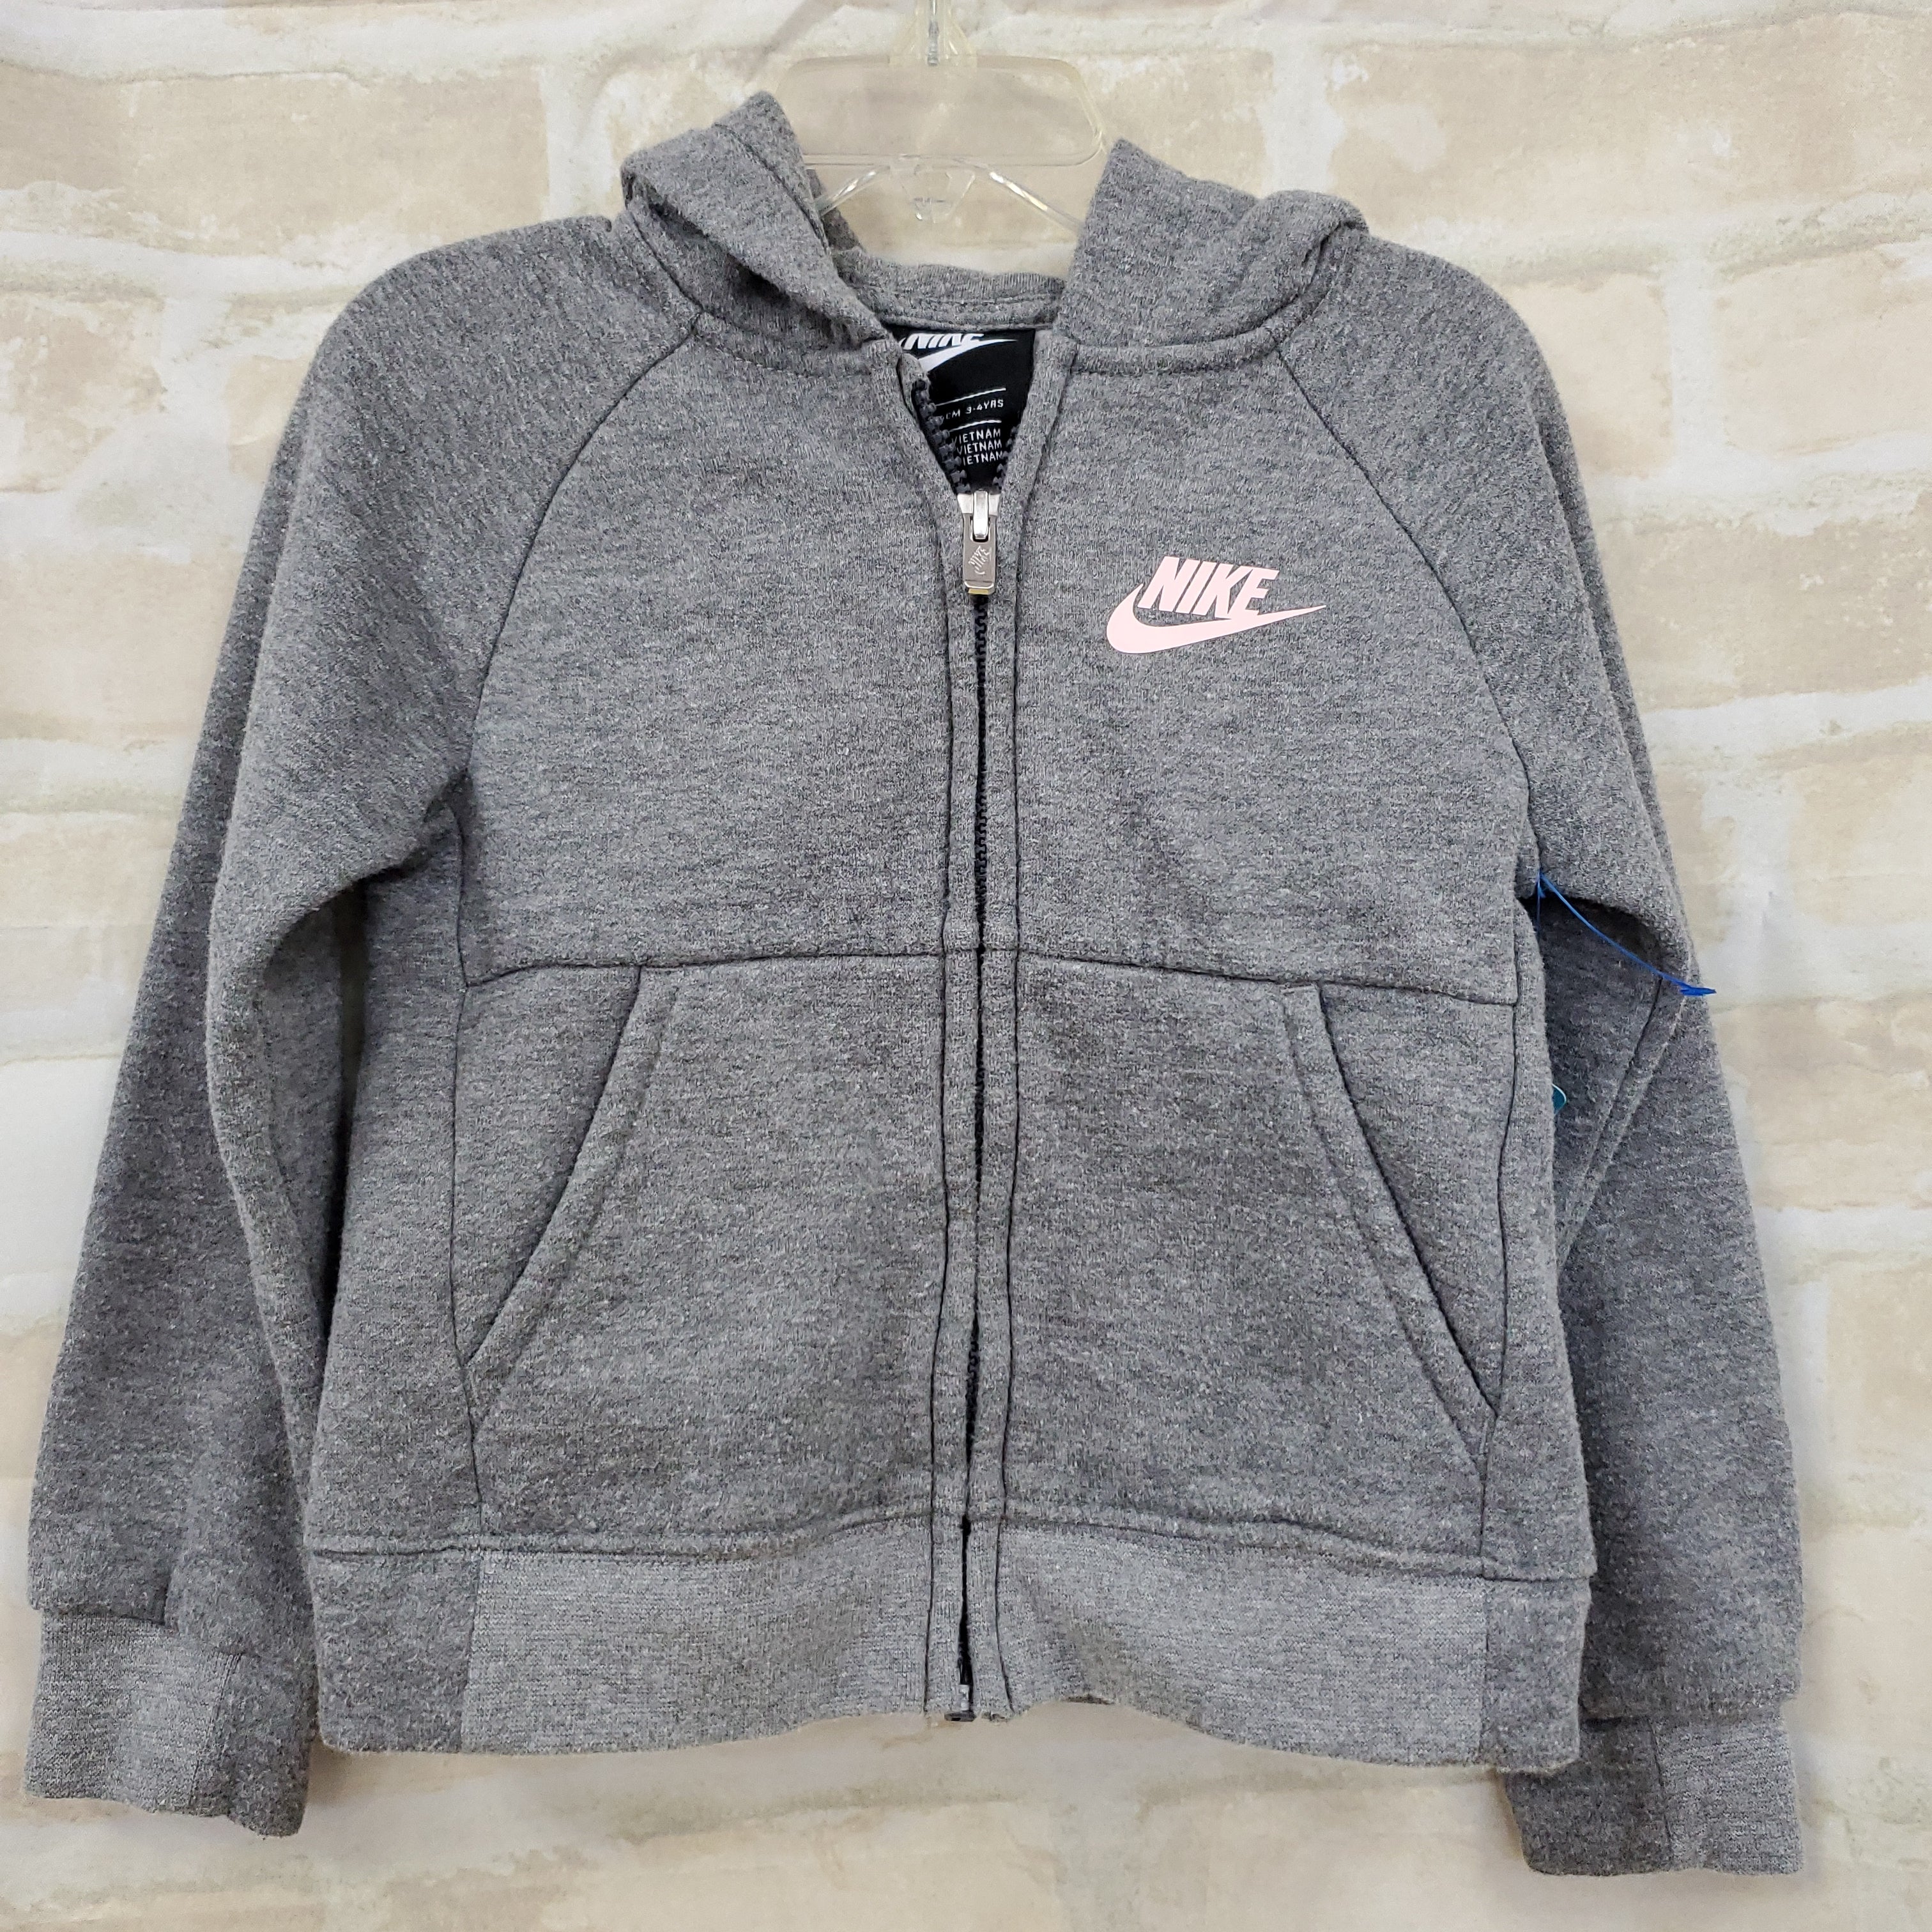 Nike girls sweatshirt gray hooded zip up 4